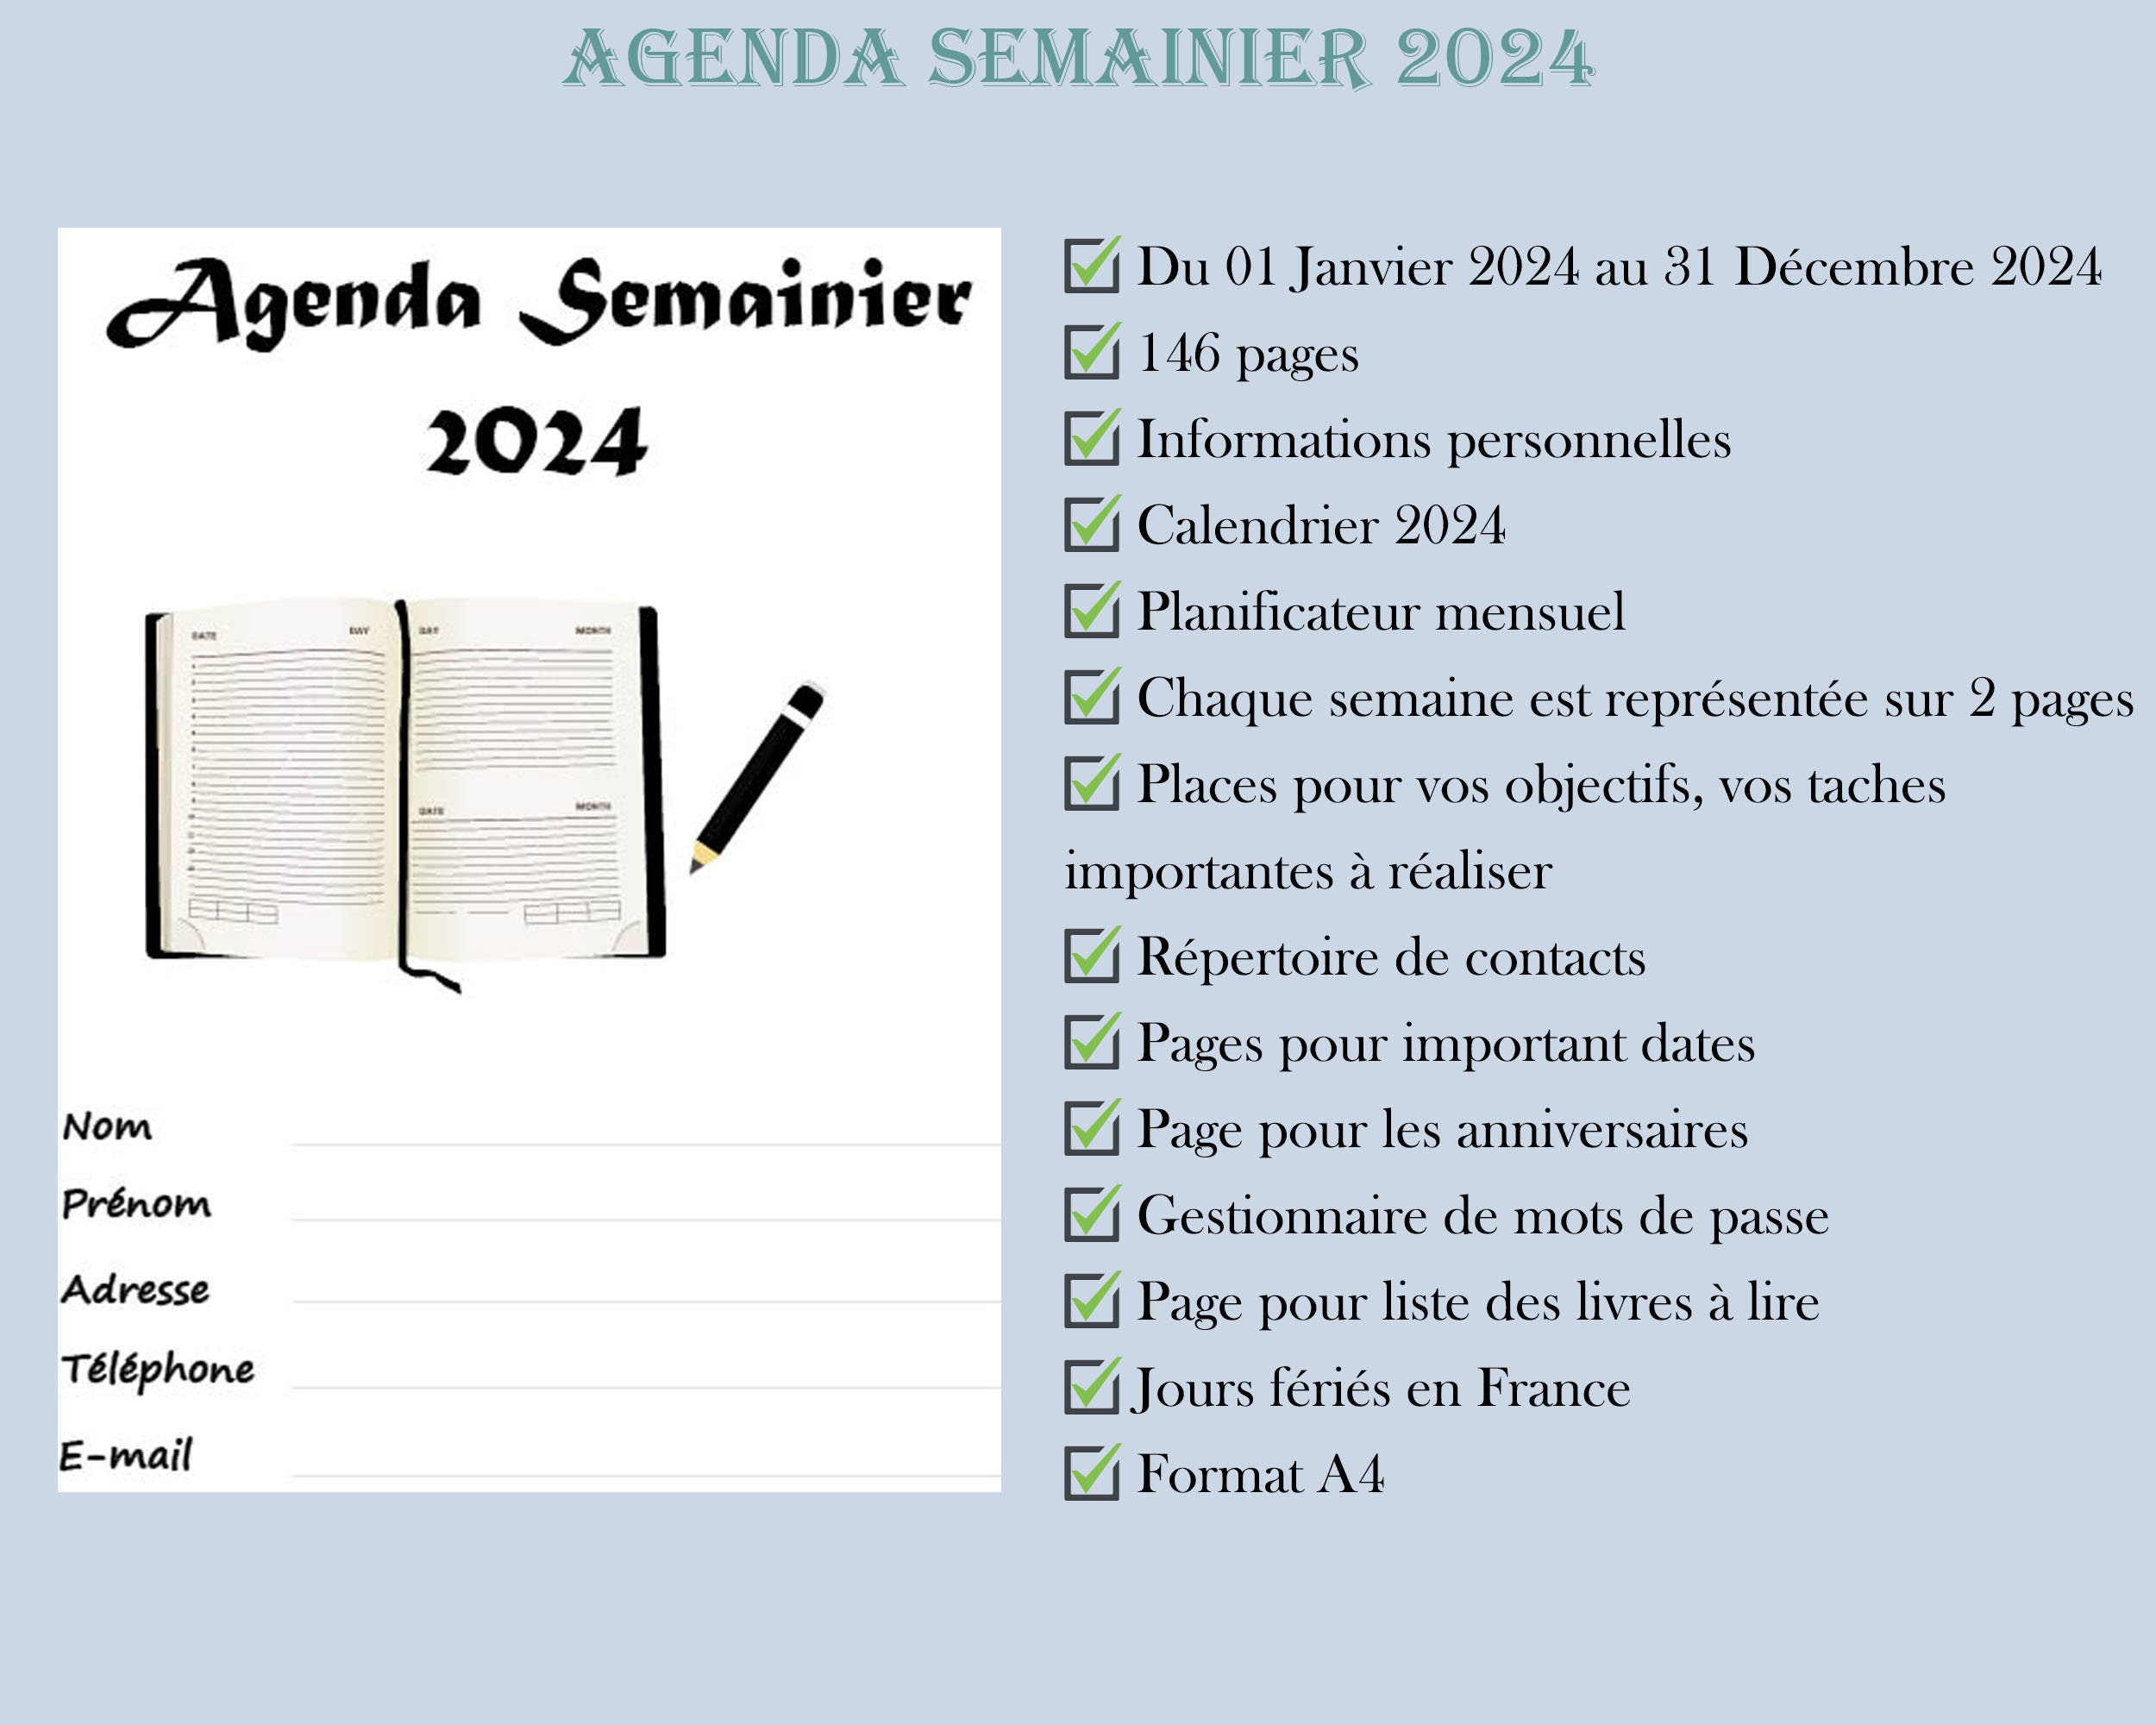 Agenda Semainier 2024 à Imprimer En Français Pour L'organisation